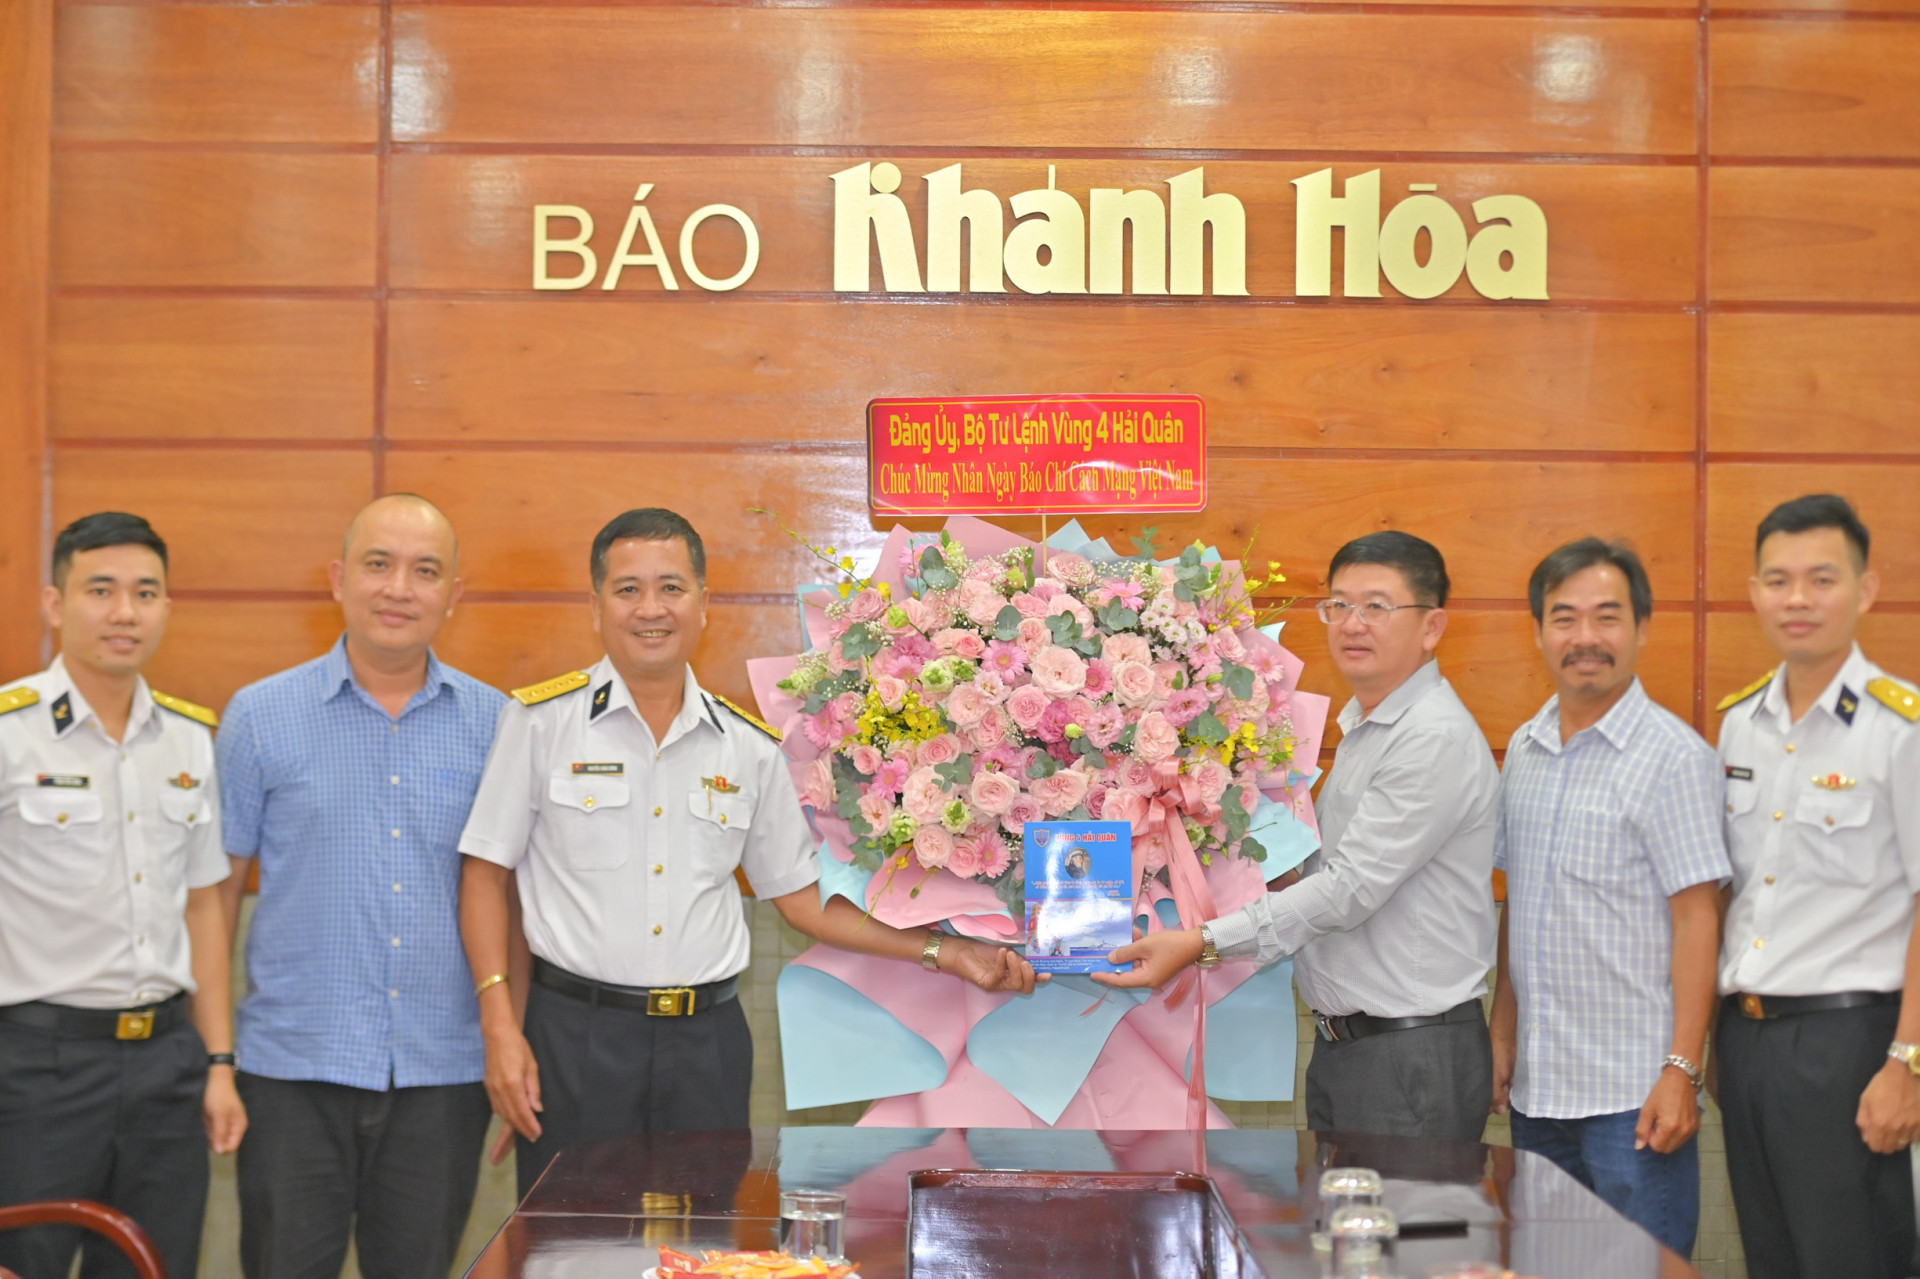 Đoàn đên thăm, tặng hoa chúc mừng Báo Khánh Hoà.